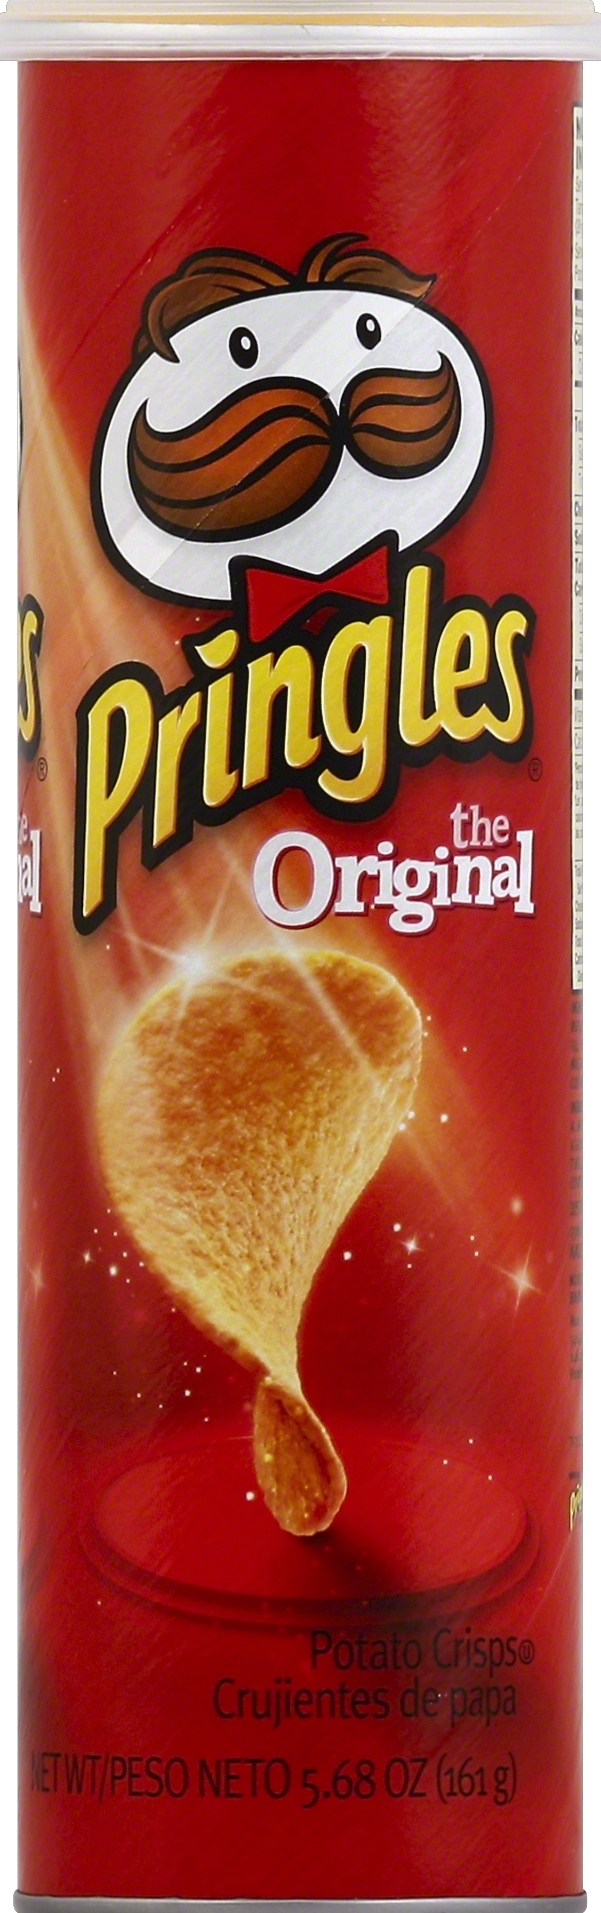 Pringles Can Original | Market